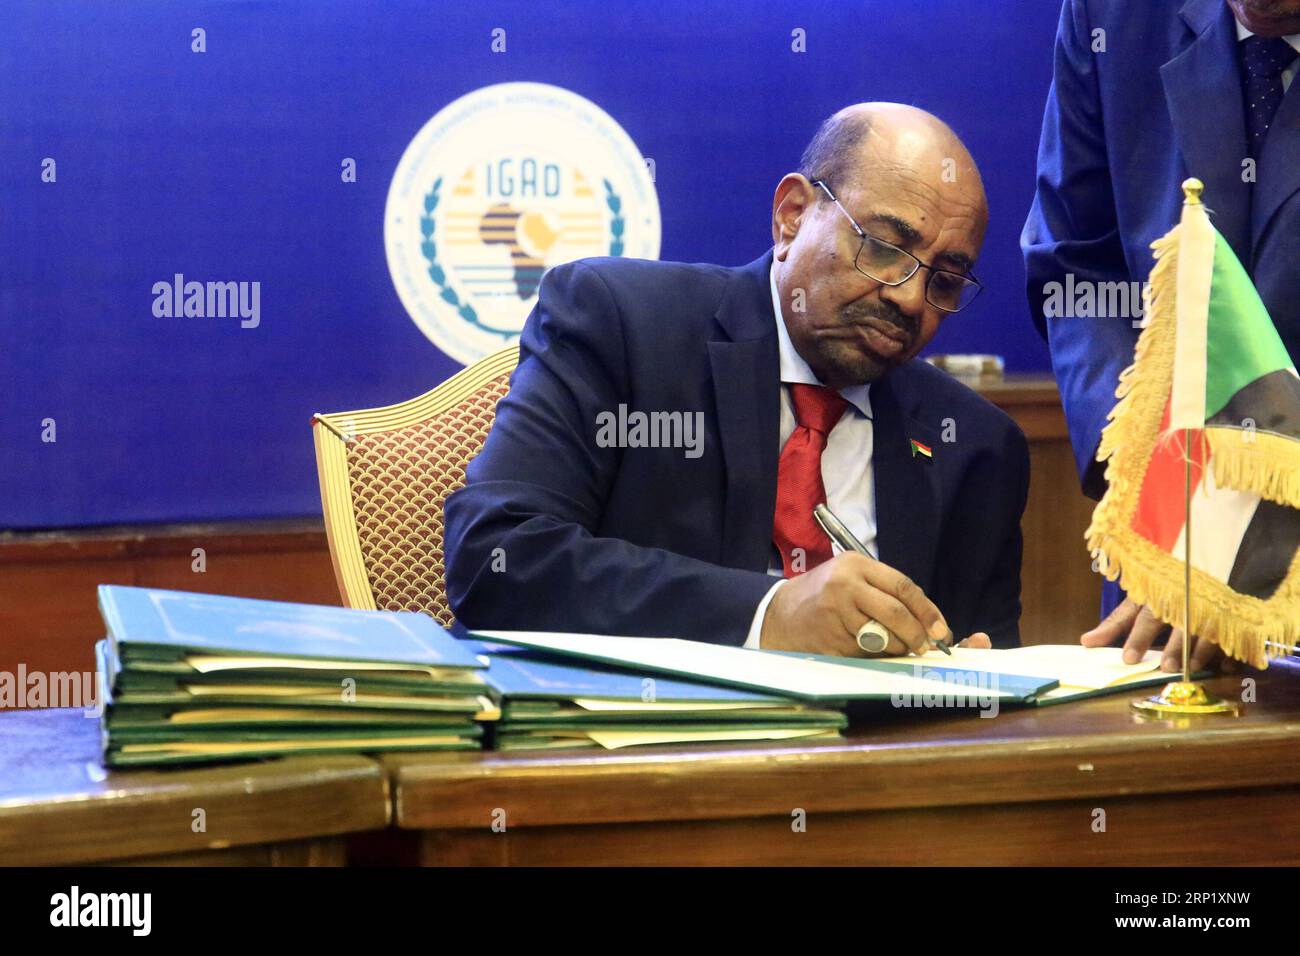 (180805) -- KHARTOUM, 5 août 2018 -- le président soudanais Omar al-Béchir signe en tant que garant de l'accord final sur le partage du pouvoir et les arrangements de sécurité entre les parties en conflit du Soudan du Sud, à Khartoum, capitale du Soudan, le 5 août 2018. Les parties en conflit au Soudan du Sud ont signé dimanche un accord final dans la capitale soudanaise Khartoum sur le partage du pouvoir et les arrangements de sécurité. SOUDAN-KHARTOUM-SOUDAN DU SUD-ACCORD FINAL-PARTAGE DU POUVOIR MOHAMEDXKHIDIR PUBLICATIONXNOTXINXCHN Banque D'Images